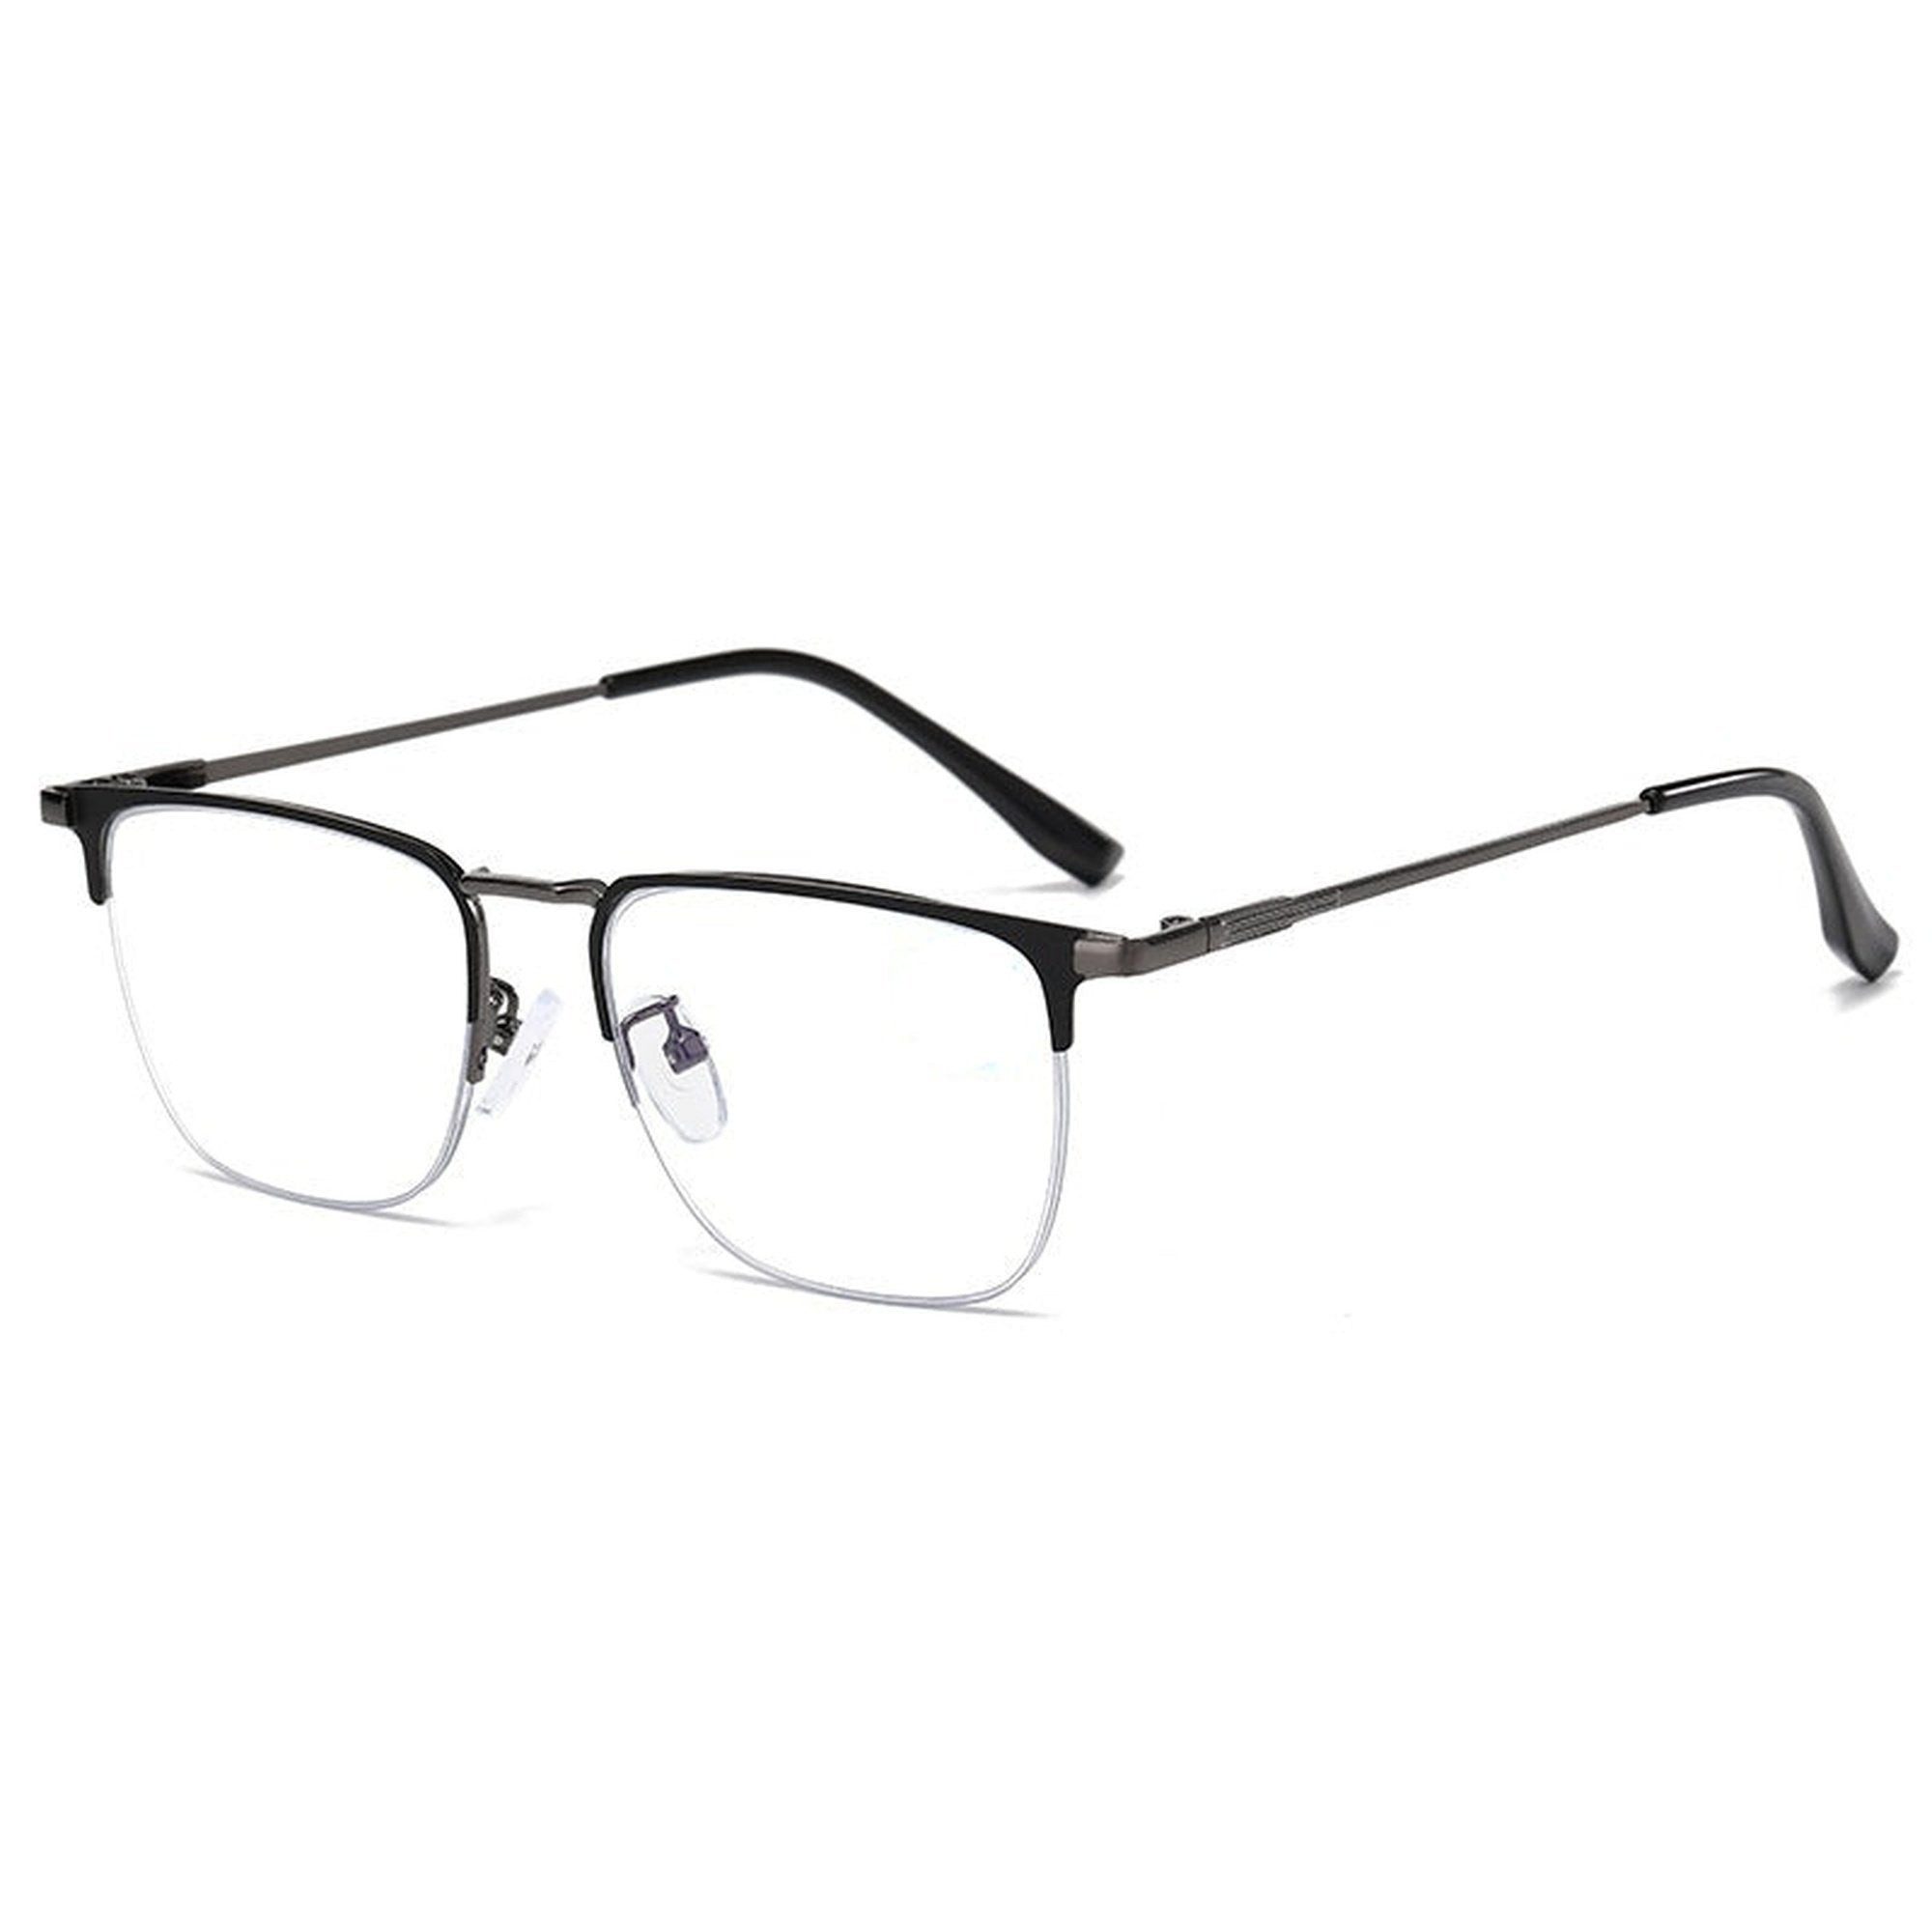 YRIIOMO Lesebrille Nicht verschreibungspflichtige photochrome Anti-Blau-Licht-Lesebrille, für Männer mit automatischer Fokussierung. Diese Brille passt sich an